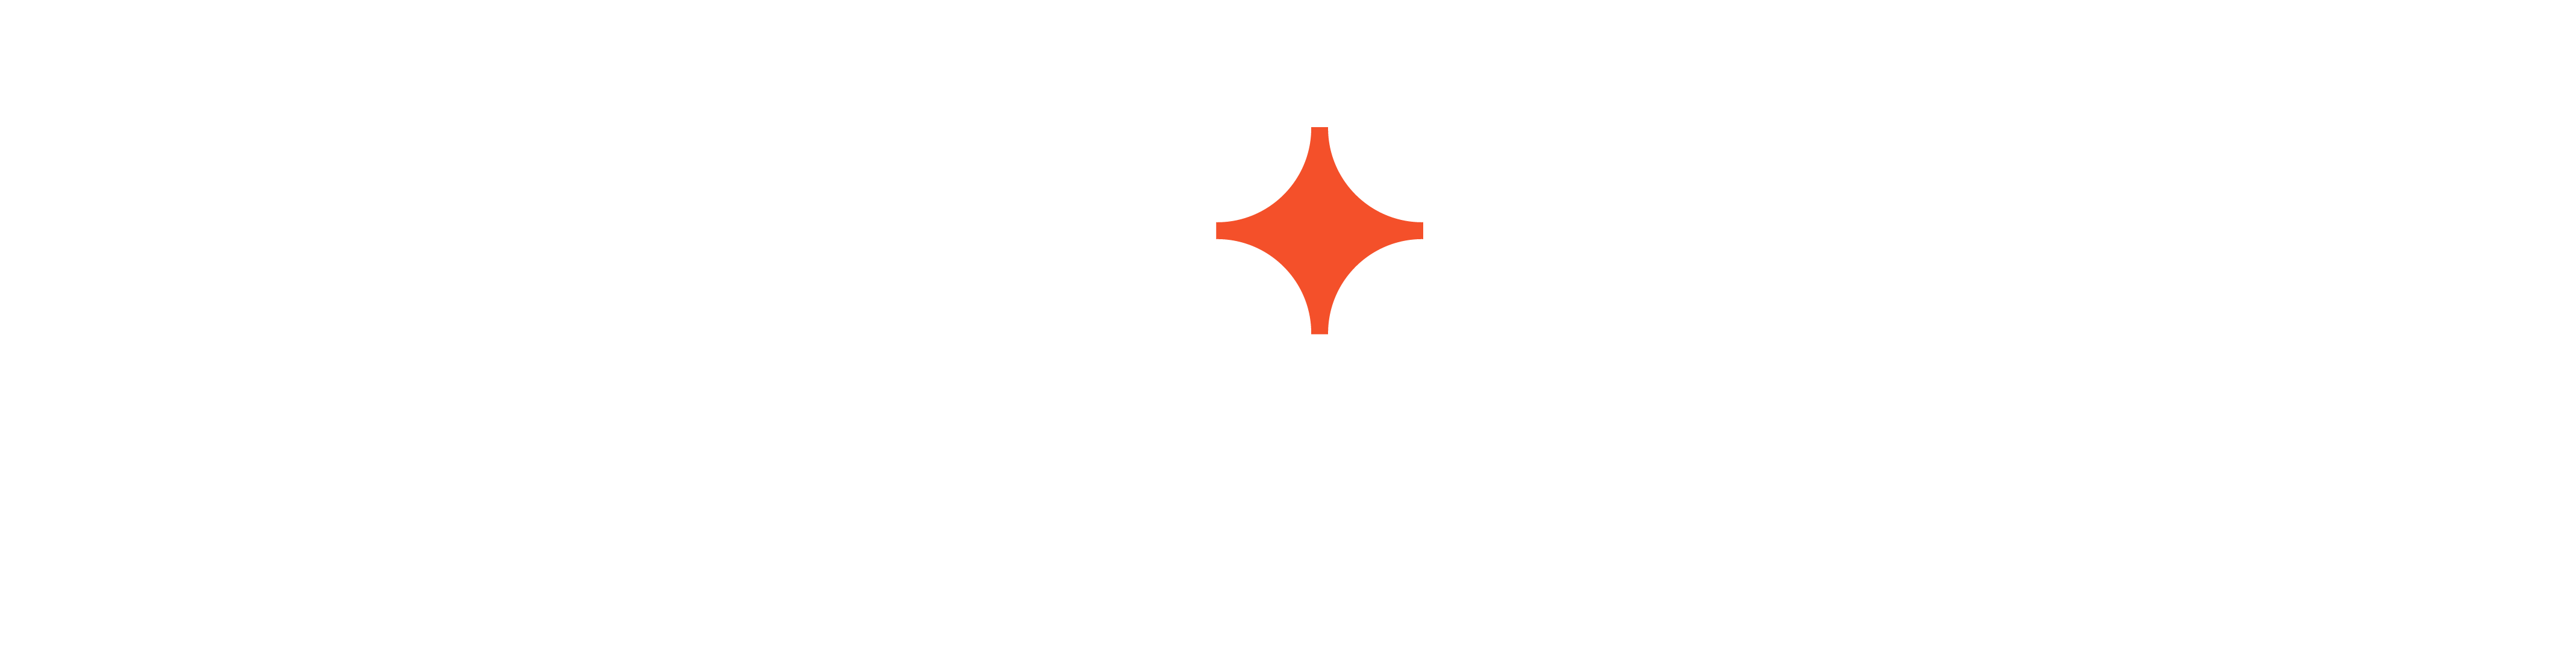 ignition_logo_white-orange_sRGB-noleftpadding-1